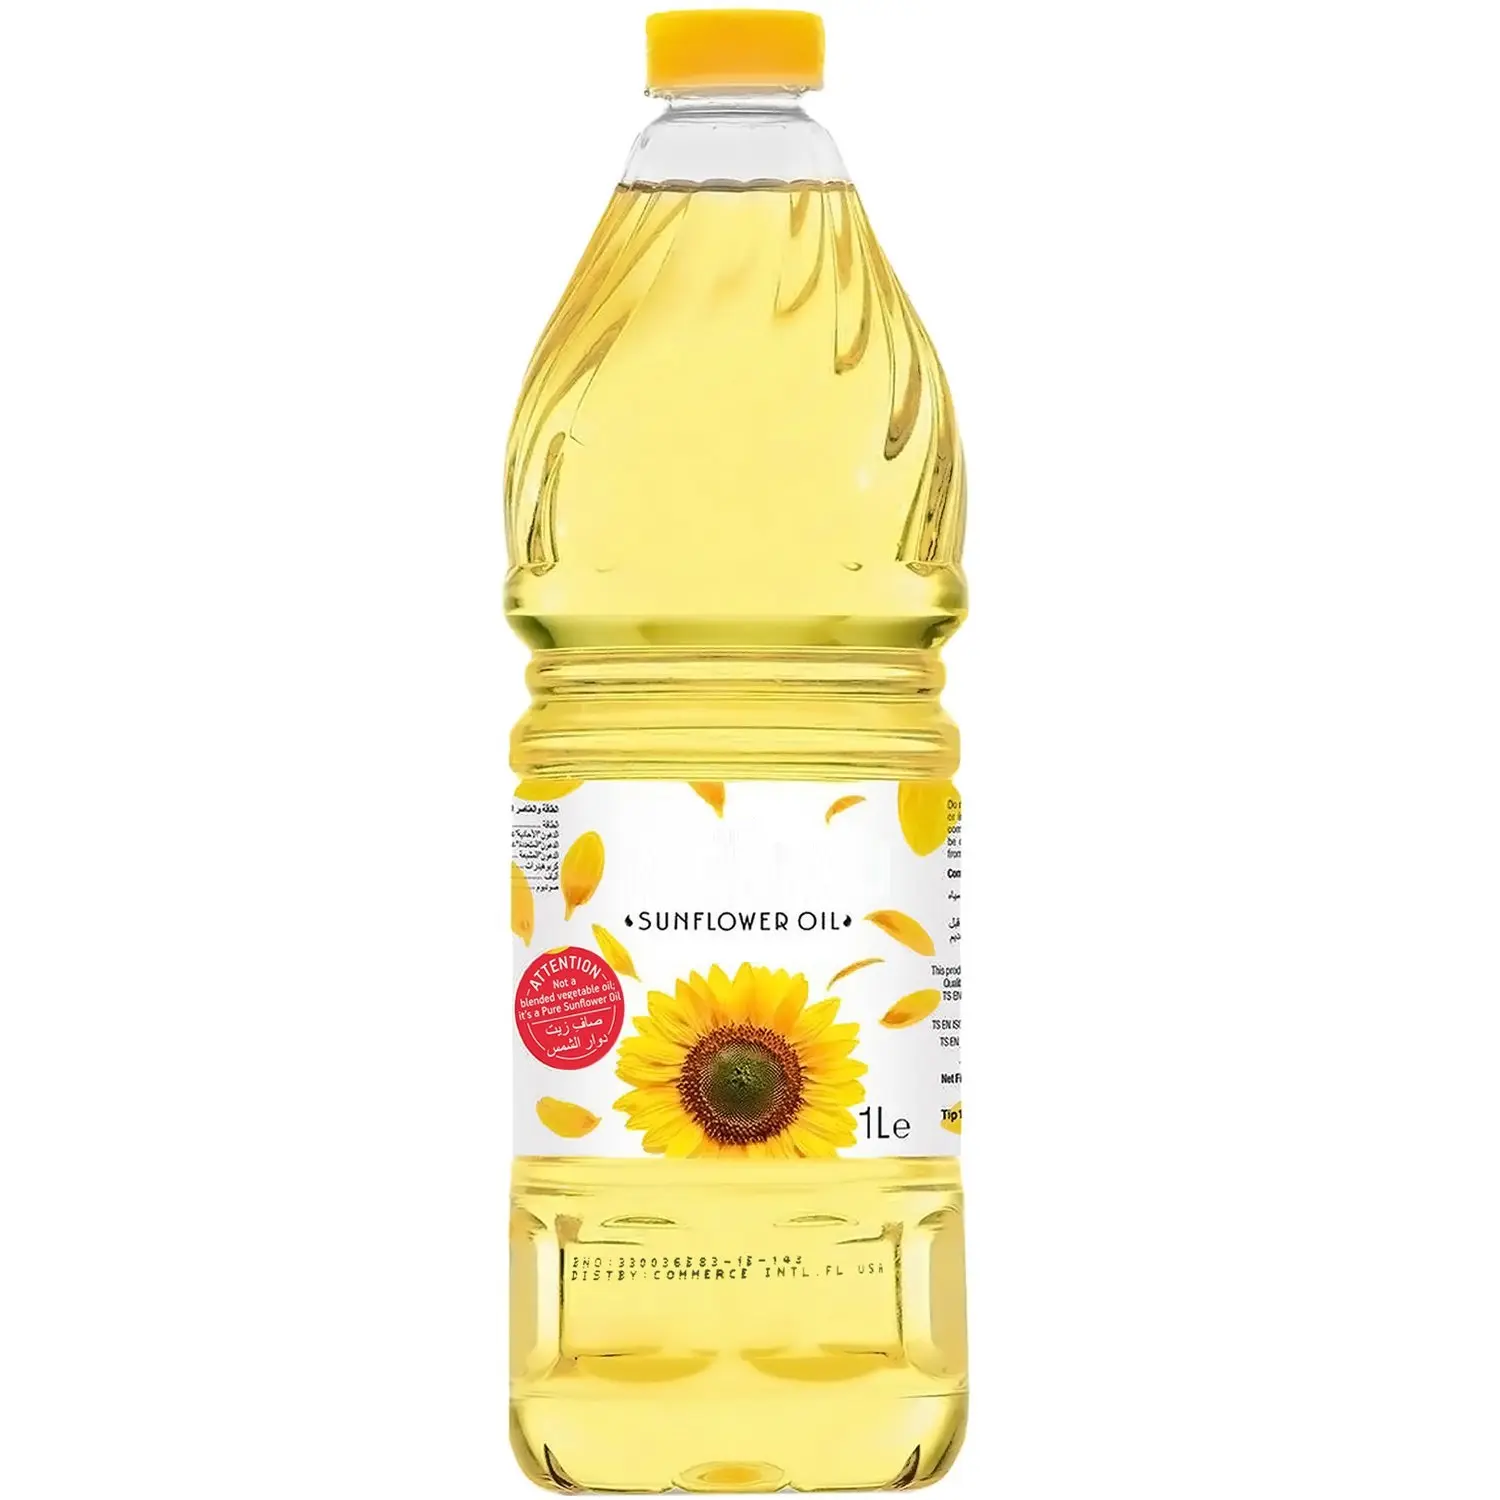 Blended Vegetable Oil: And Sunflower Oil